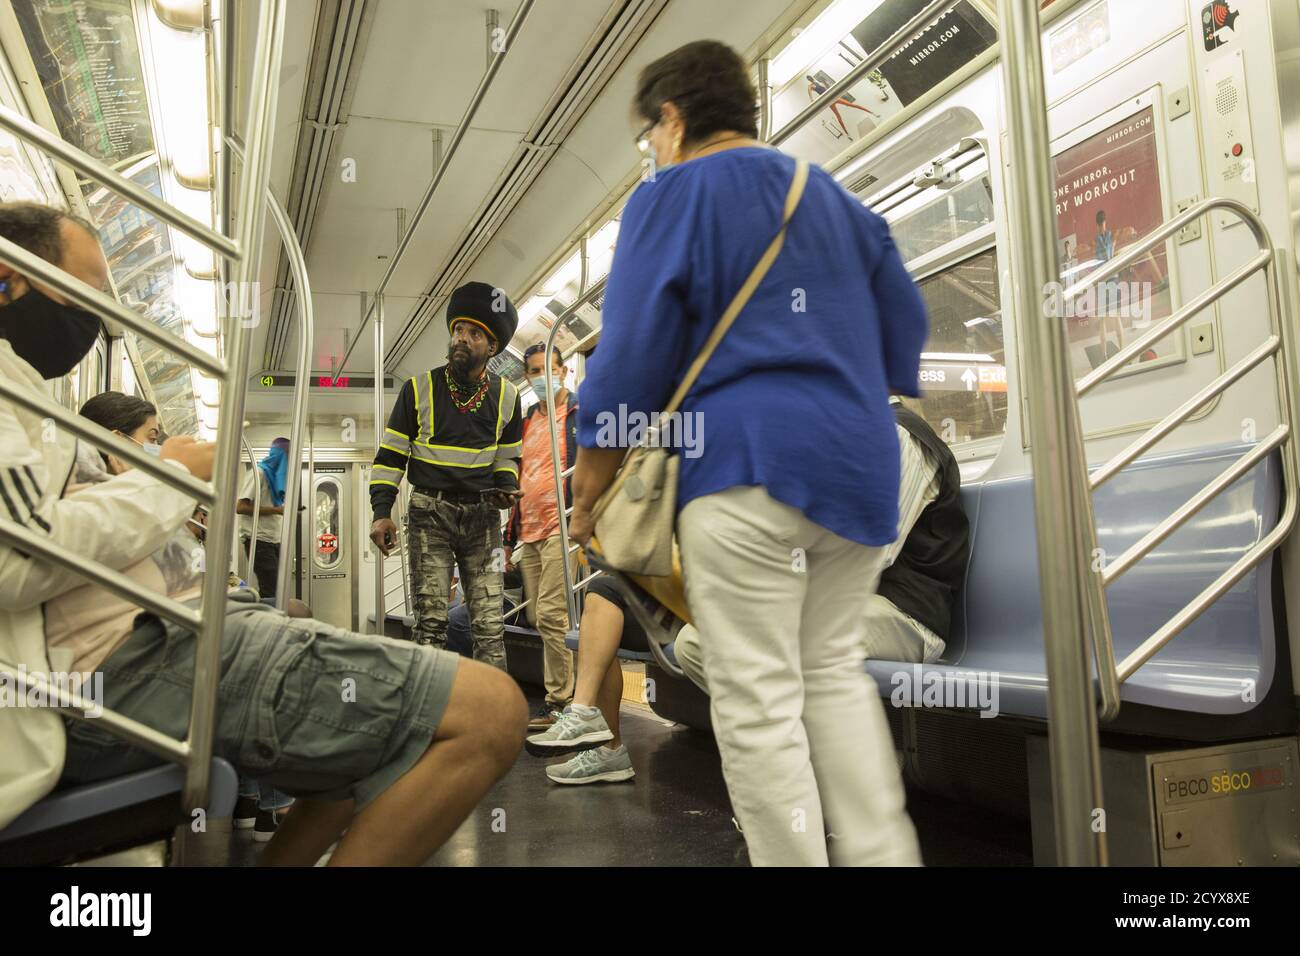 Mann geht maskless auf einem NYC Uptown #4 Zug auf der Lexington Linie. Aufgrund der Covid-19-Pandemie sind in den Zügen Masken obligatorisch. Immer noch viele Menschen aufgrund nicht immer mit den Regeln. Stockfoto